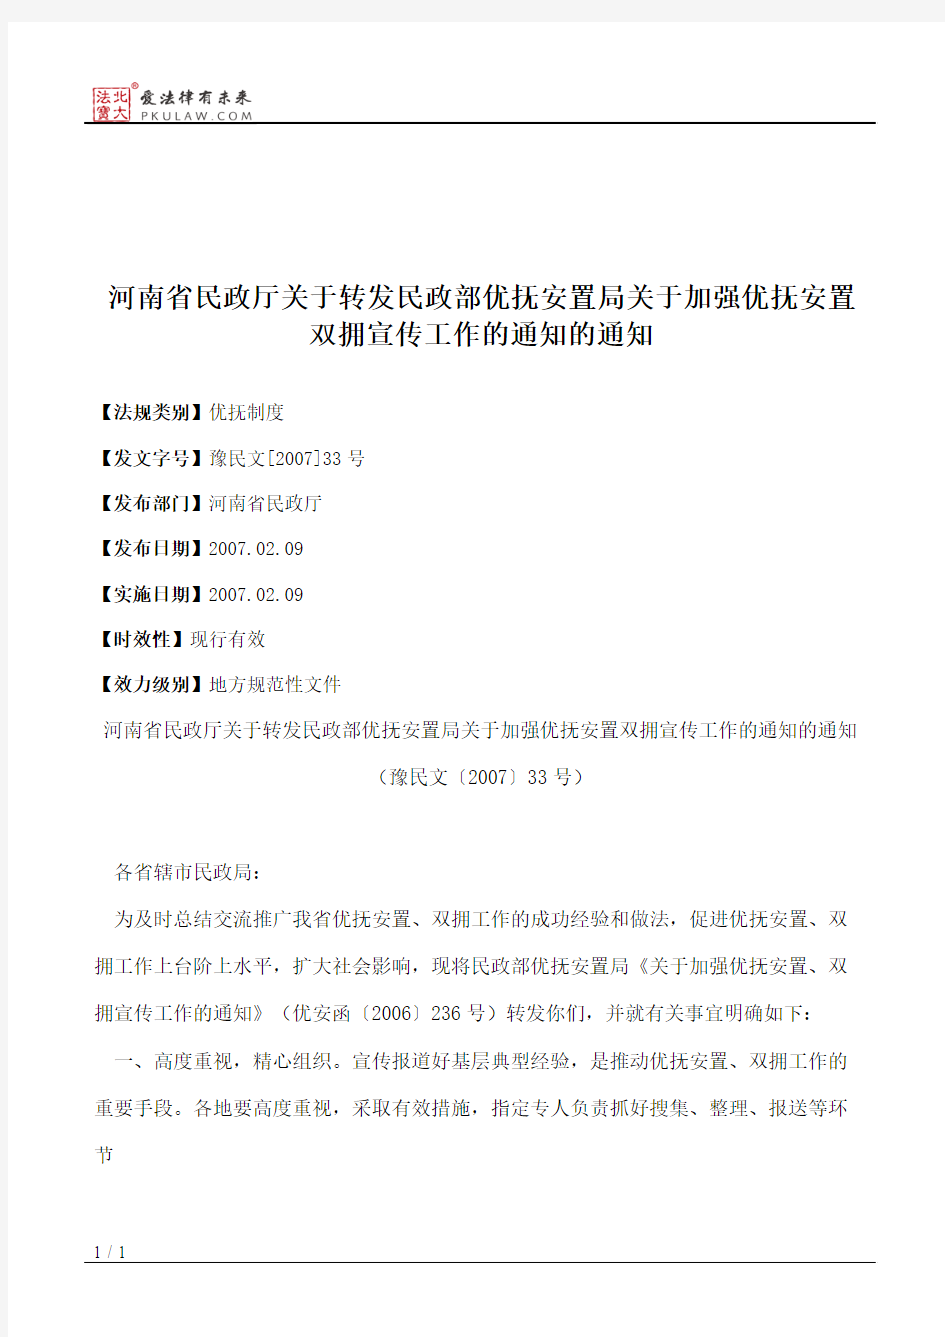 河南省民政厅关于转发民政部优抚安置局关于加强优抚安置双拥宣传